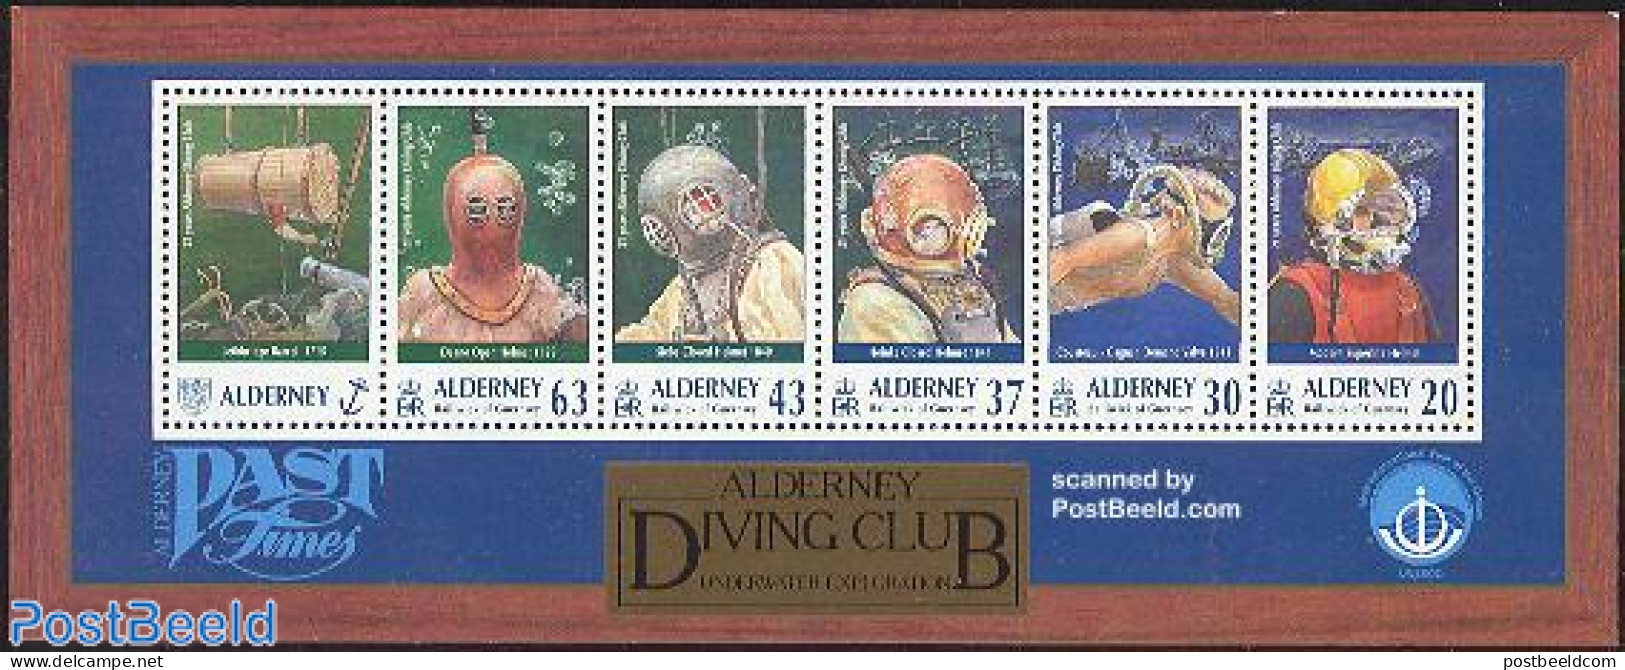 Alderney 1998 Diving Club S/s, Mint NH, Sport - Diving - Plongée